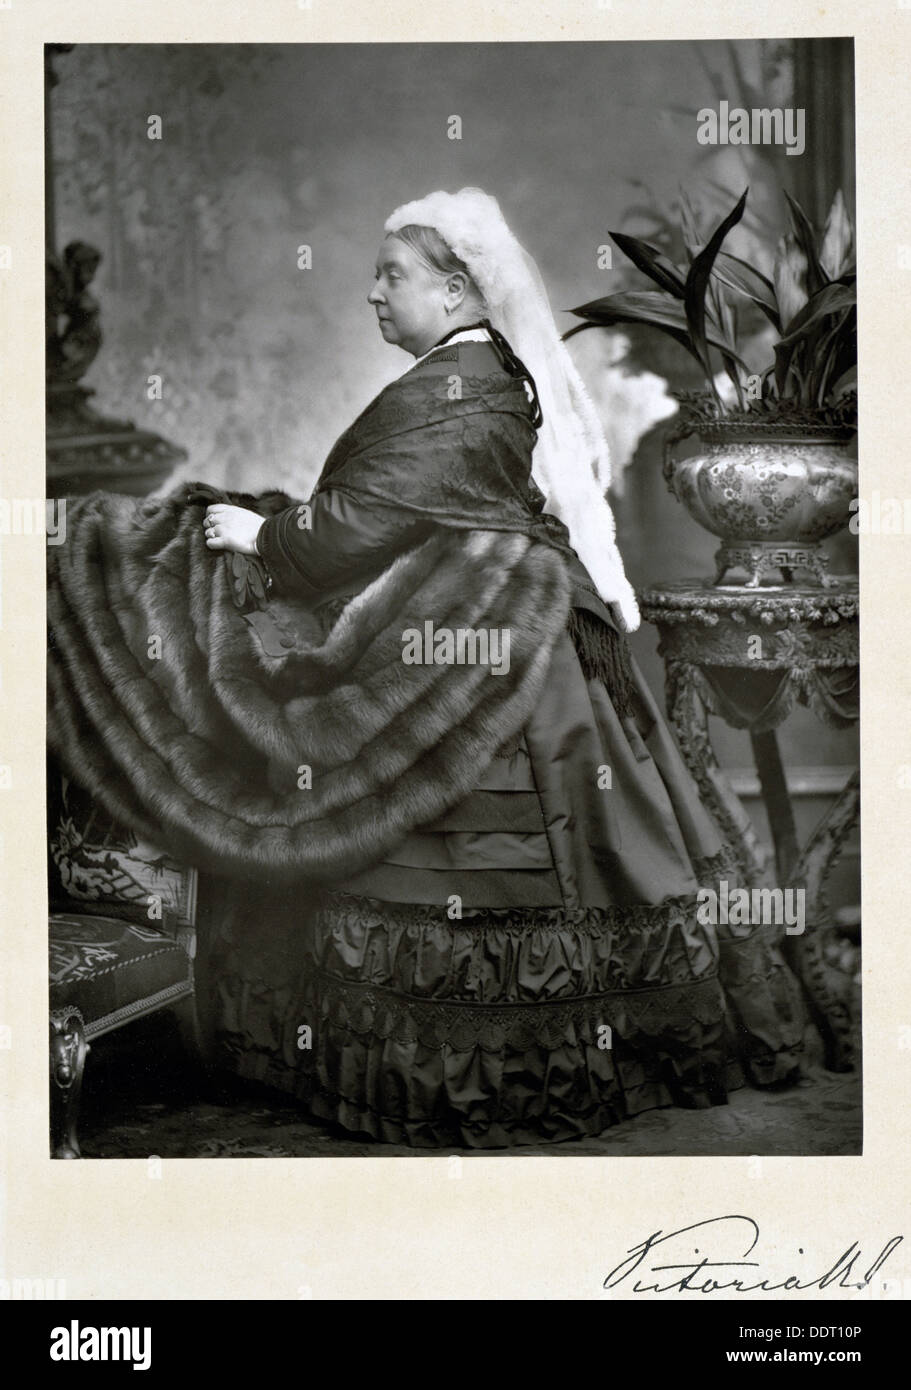 La regina Victoria, fine del XIX secolo. Artista: Walery Foto Stock